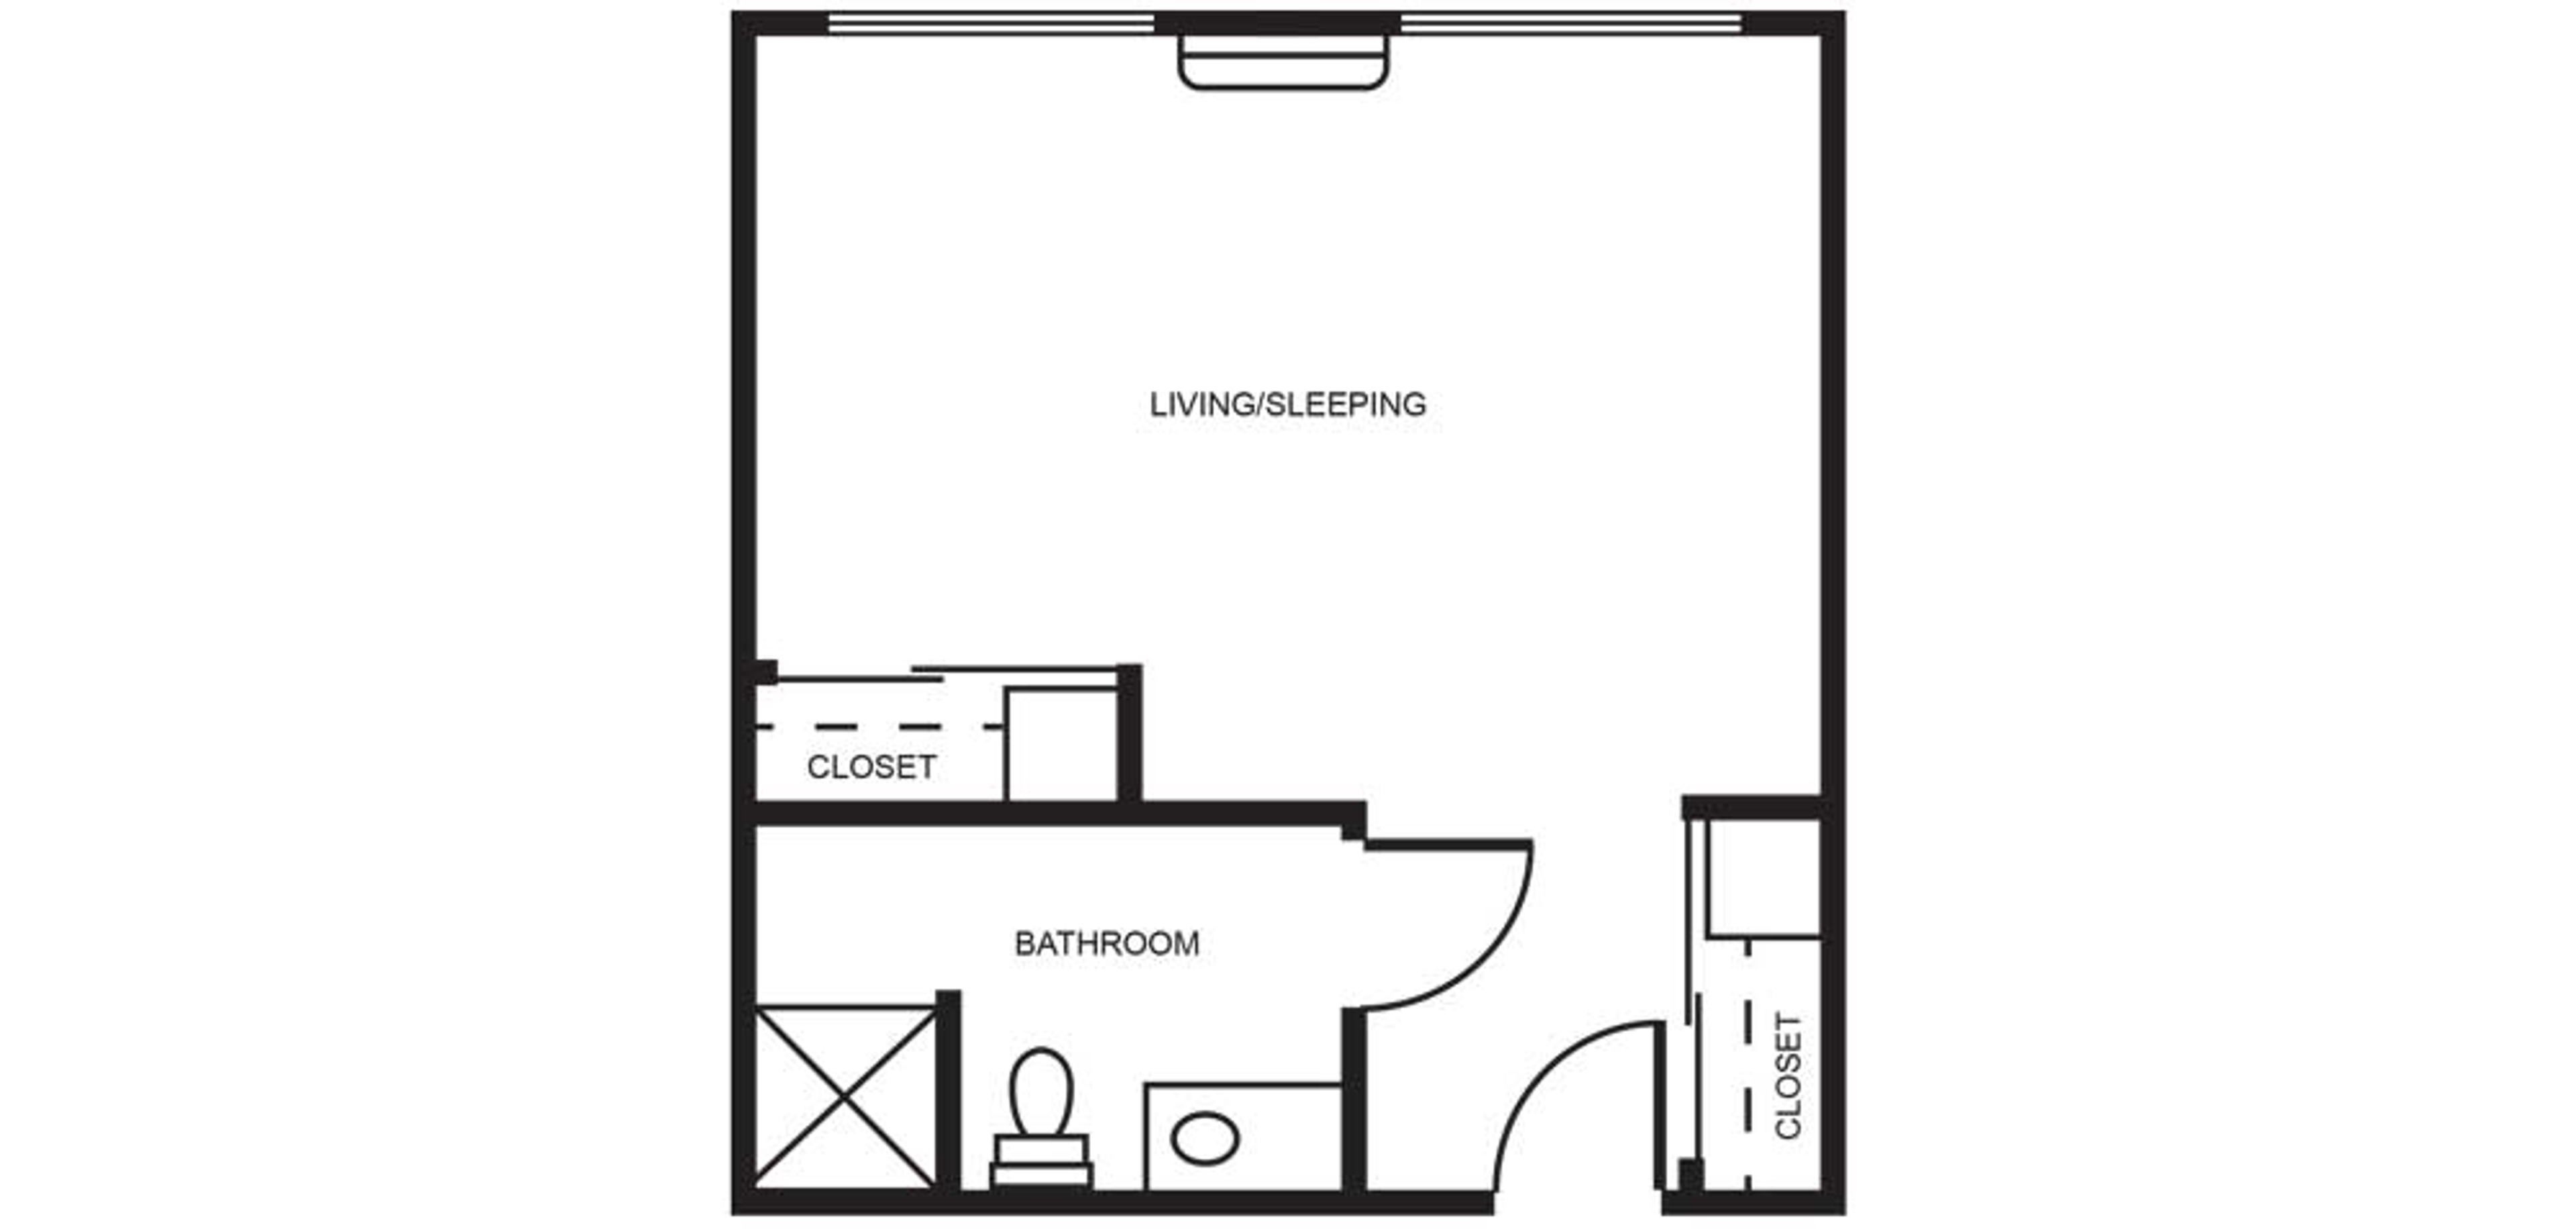 Floorplan - Barathaven - Shared suite